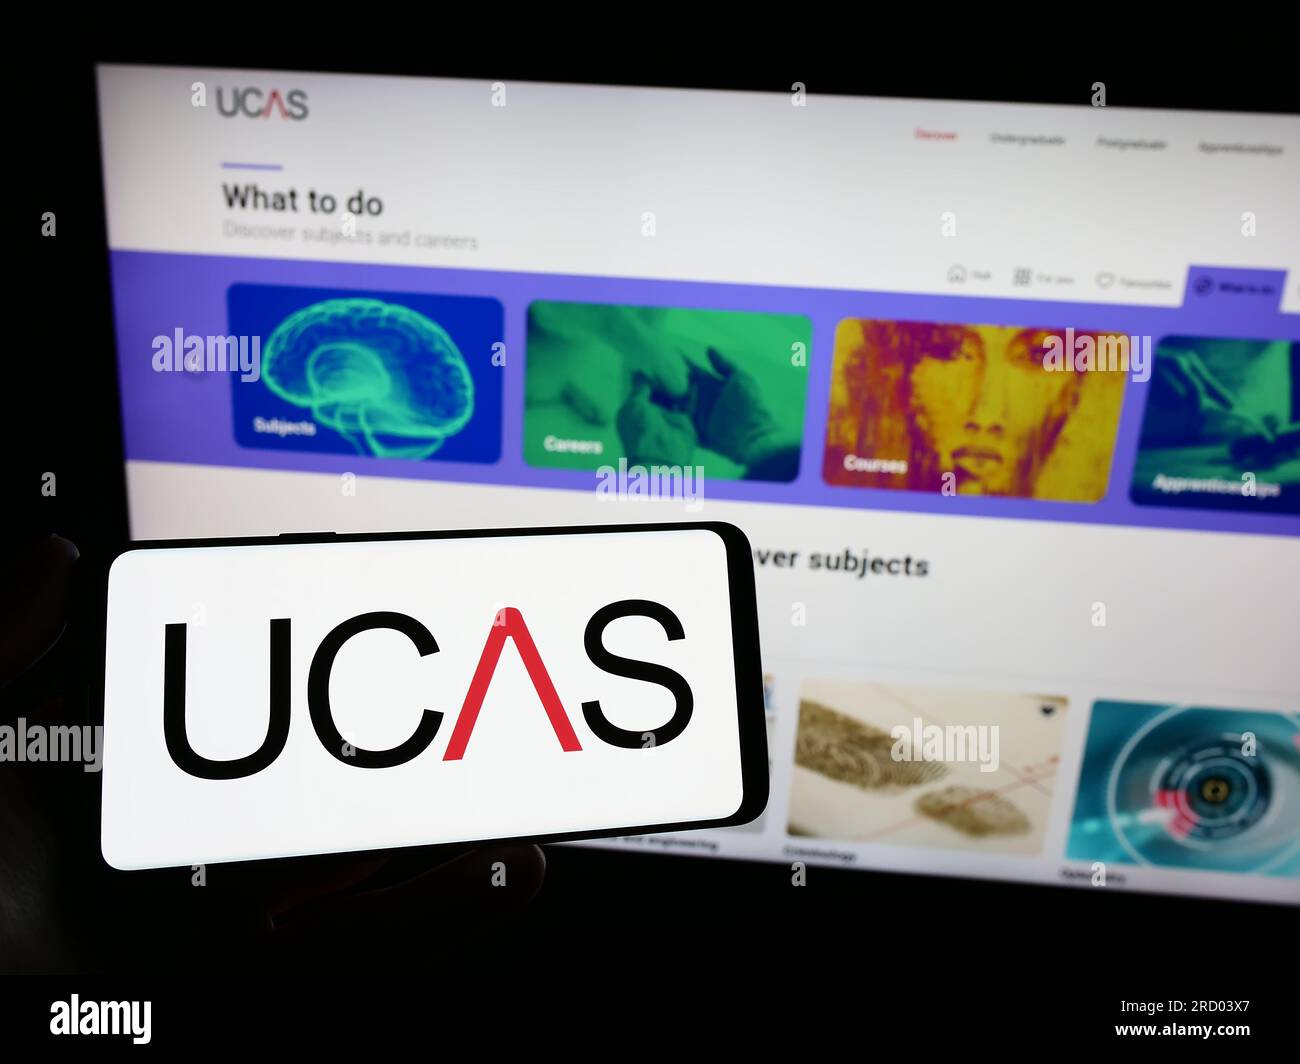 Persona che possiede uno smartphone con il logo di Universities and Colleges Admissions Service (UCAS) sullo schermo davanti al sito Web. Concentrarsi sul display del telefono. Foto Stock